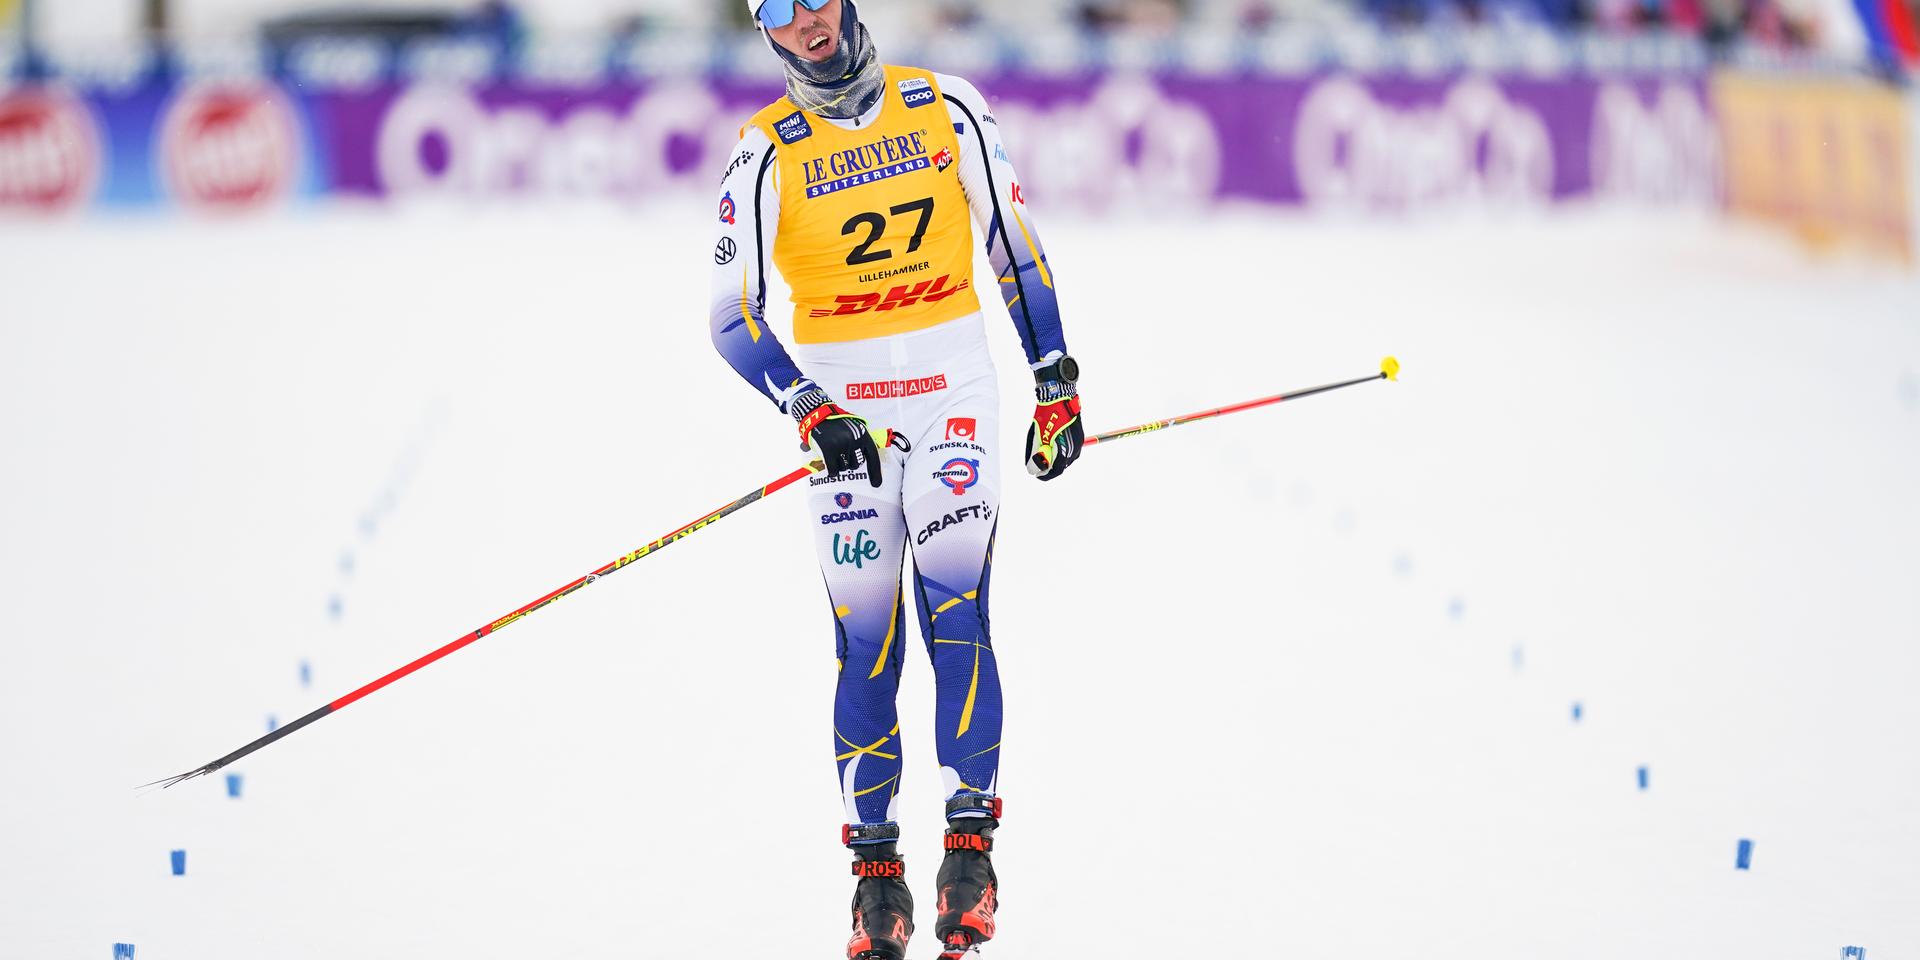 Sveriges Calle Halfvarsson vid målgång på 15 kilometer fristil under världscupen i längdskidor i Lillehammer.